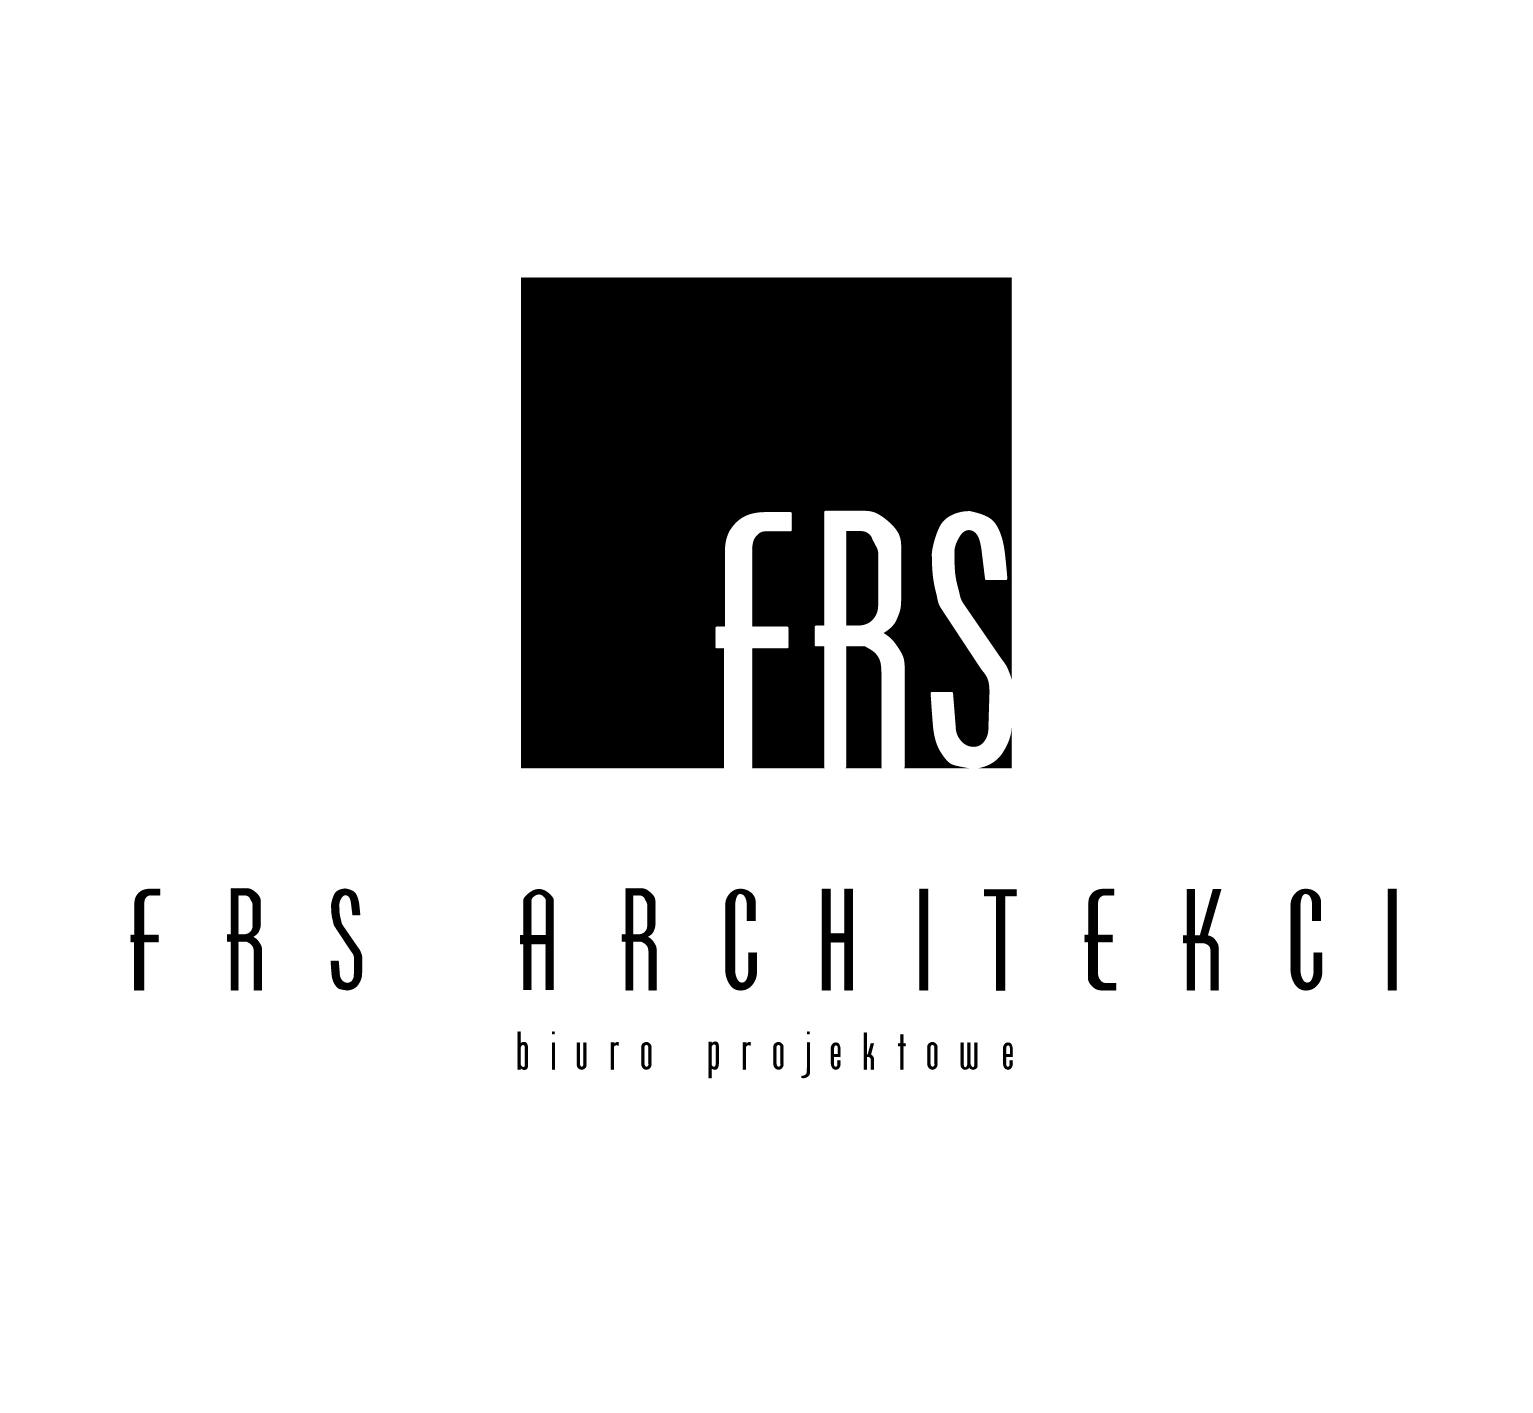 Architektura - projekty architektoniczno-budowlane